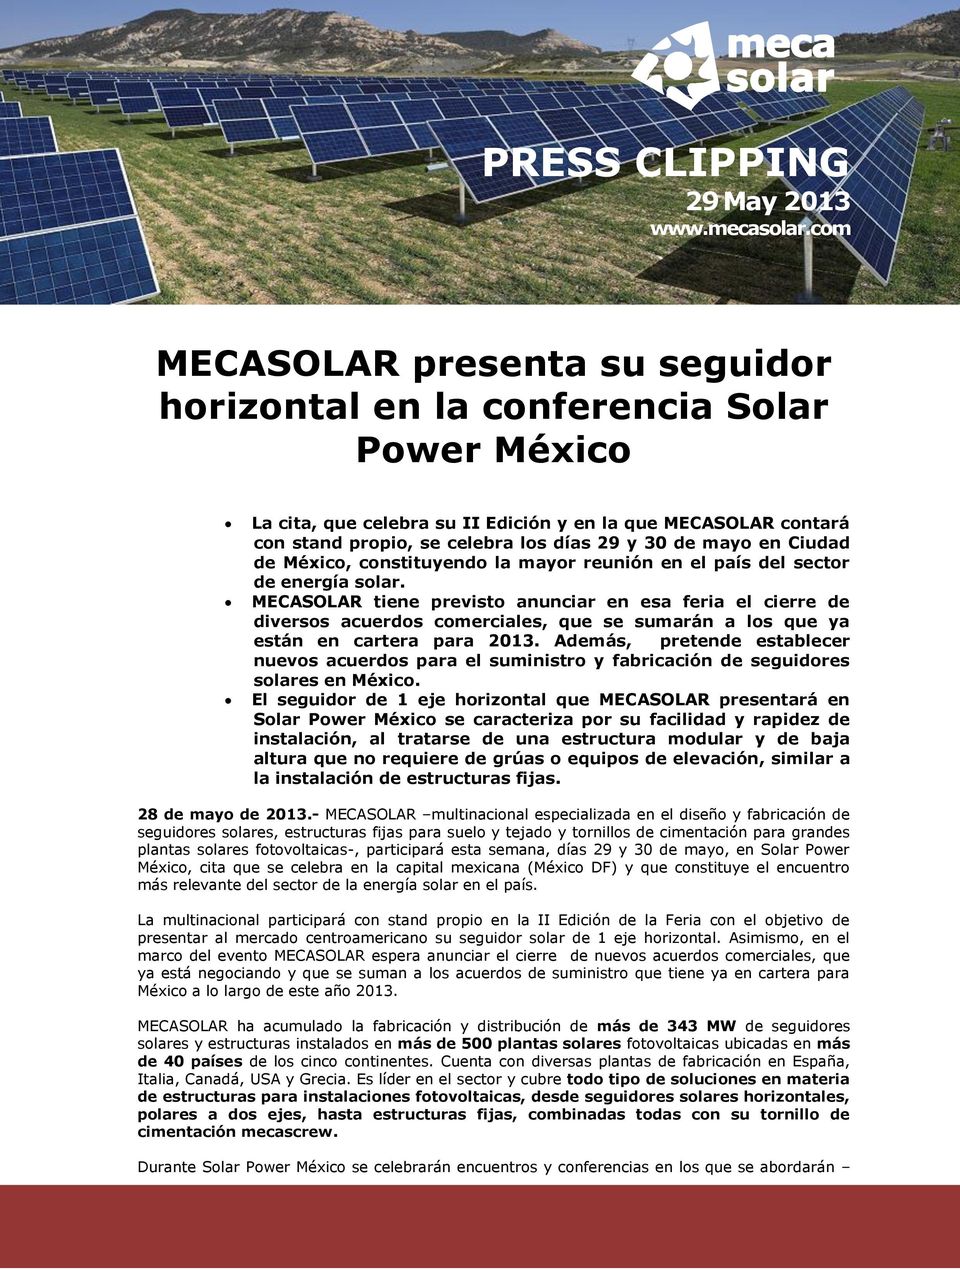 mayo en Ciudad de México, constituyendo la mayor reunión en el país del sector de energía solar.